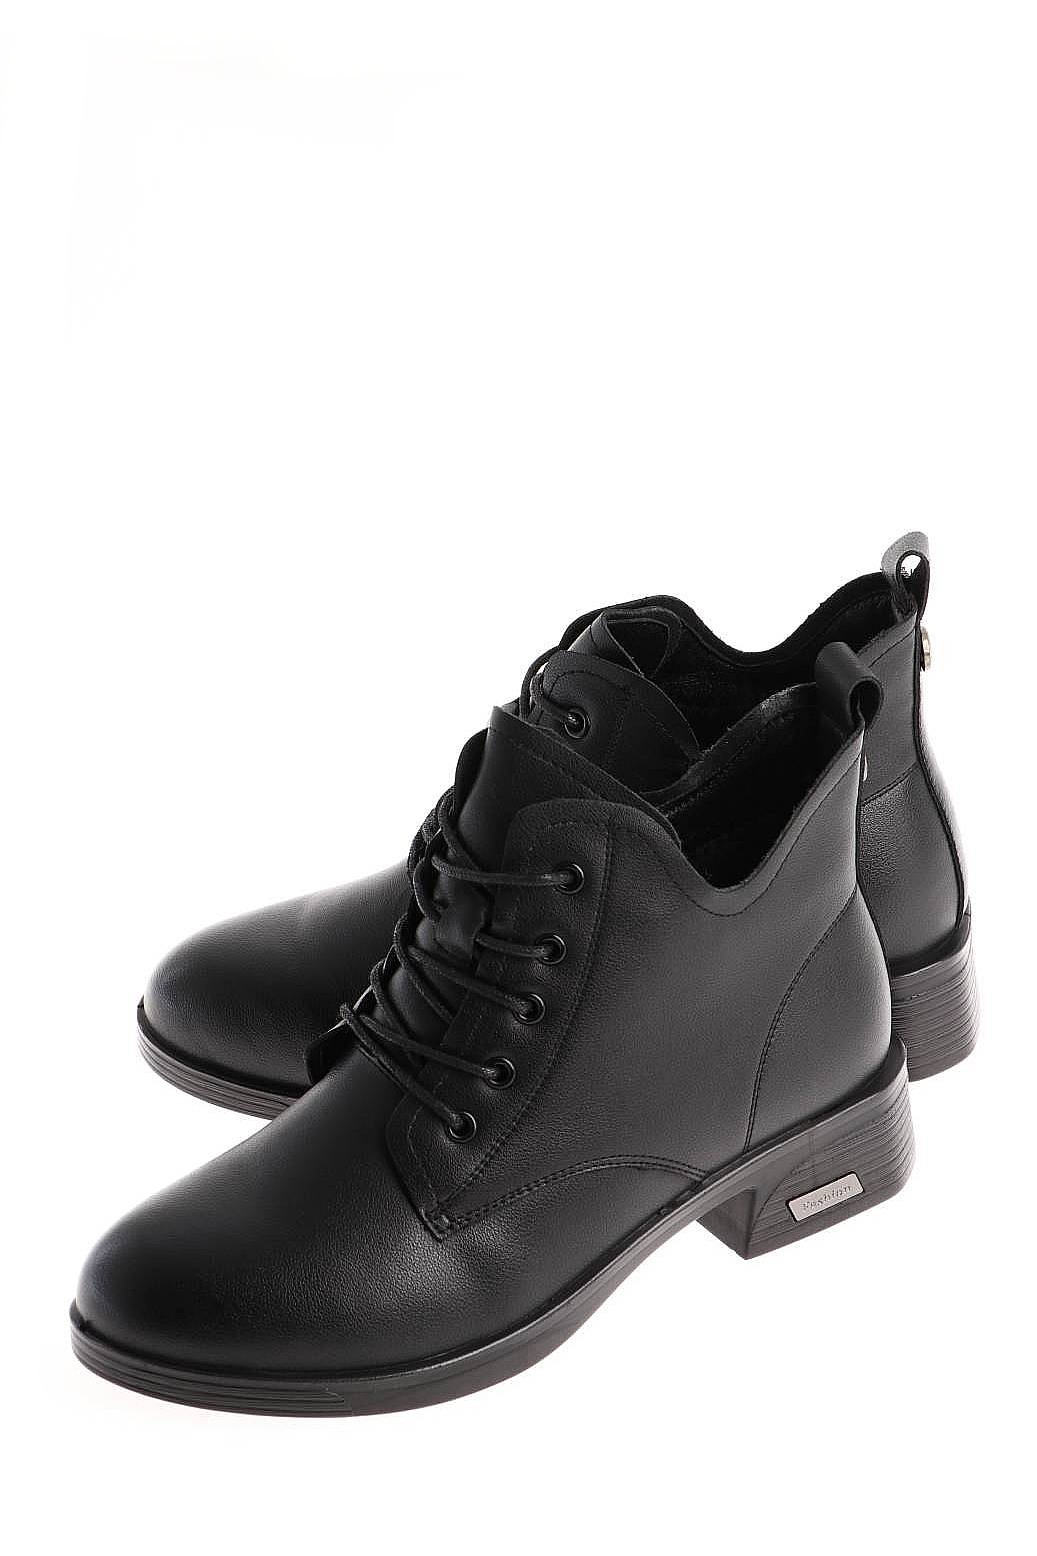 Ботинки женские Baden NK030-021 черные 37 RU